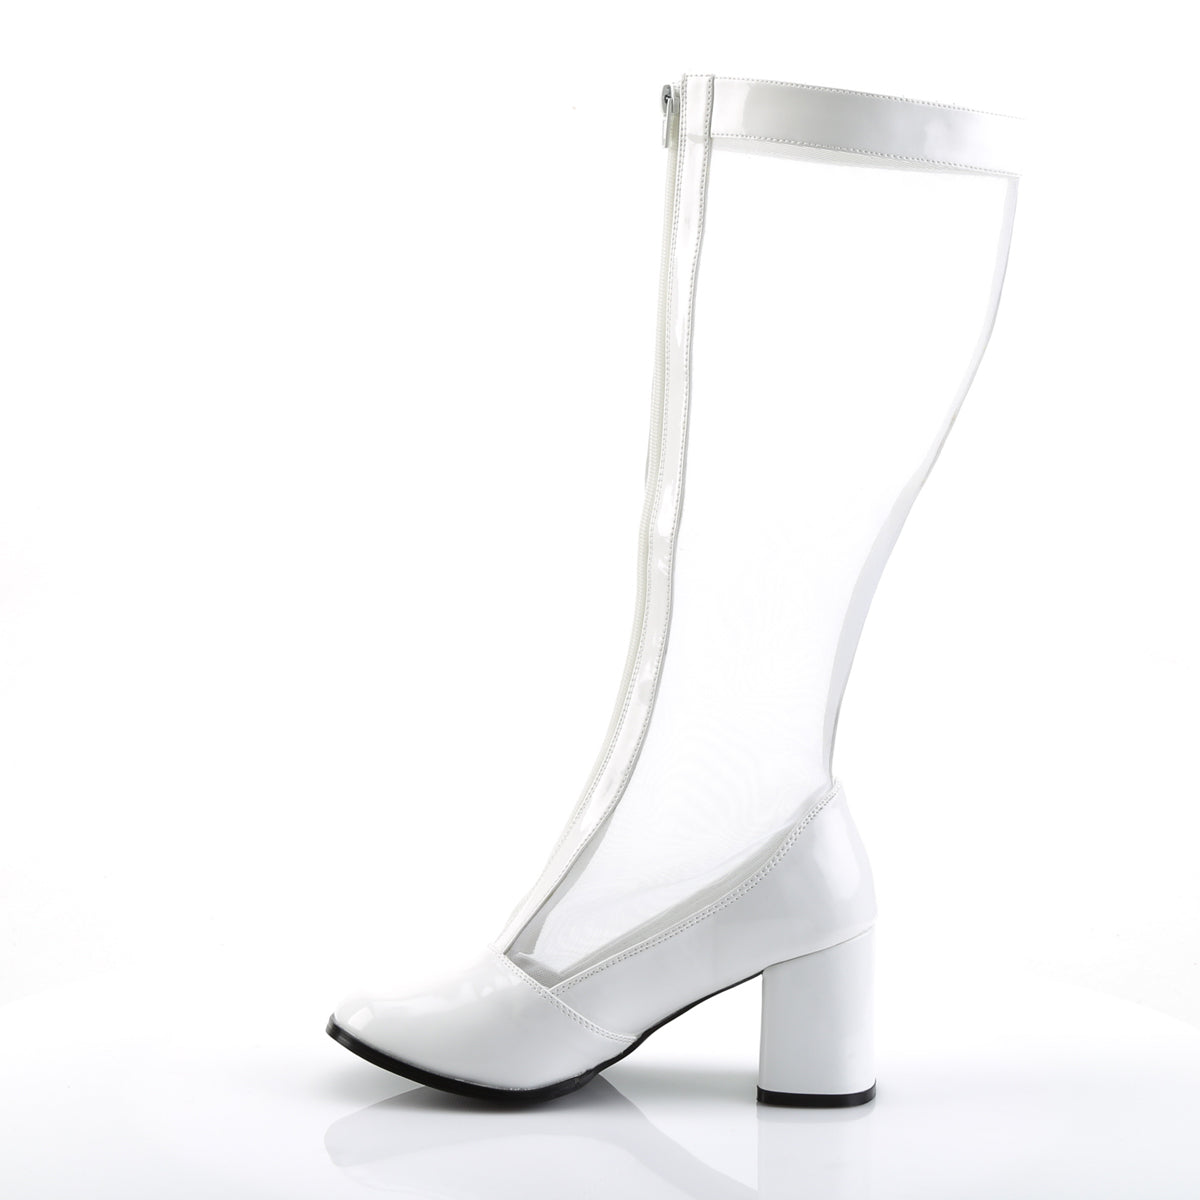 GOGO-307 - White Stretch Patent Mesh Knee Boots - A Shoe Addiction Australia